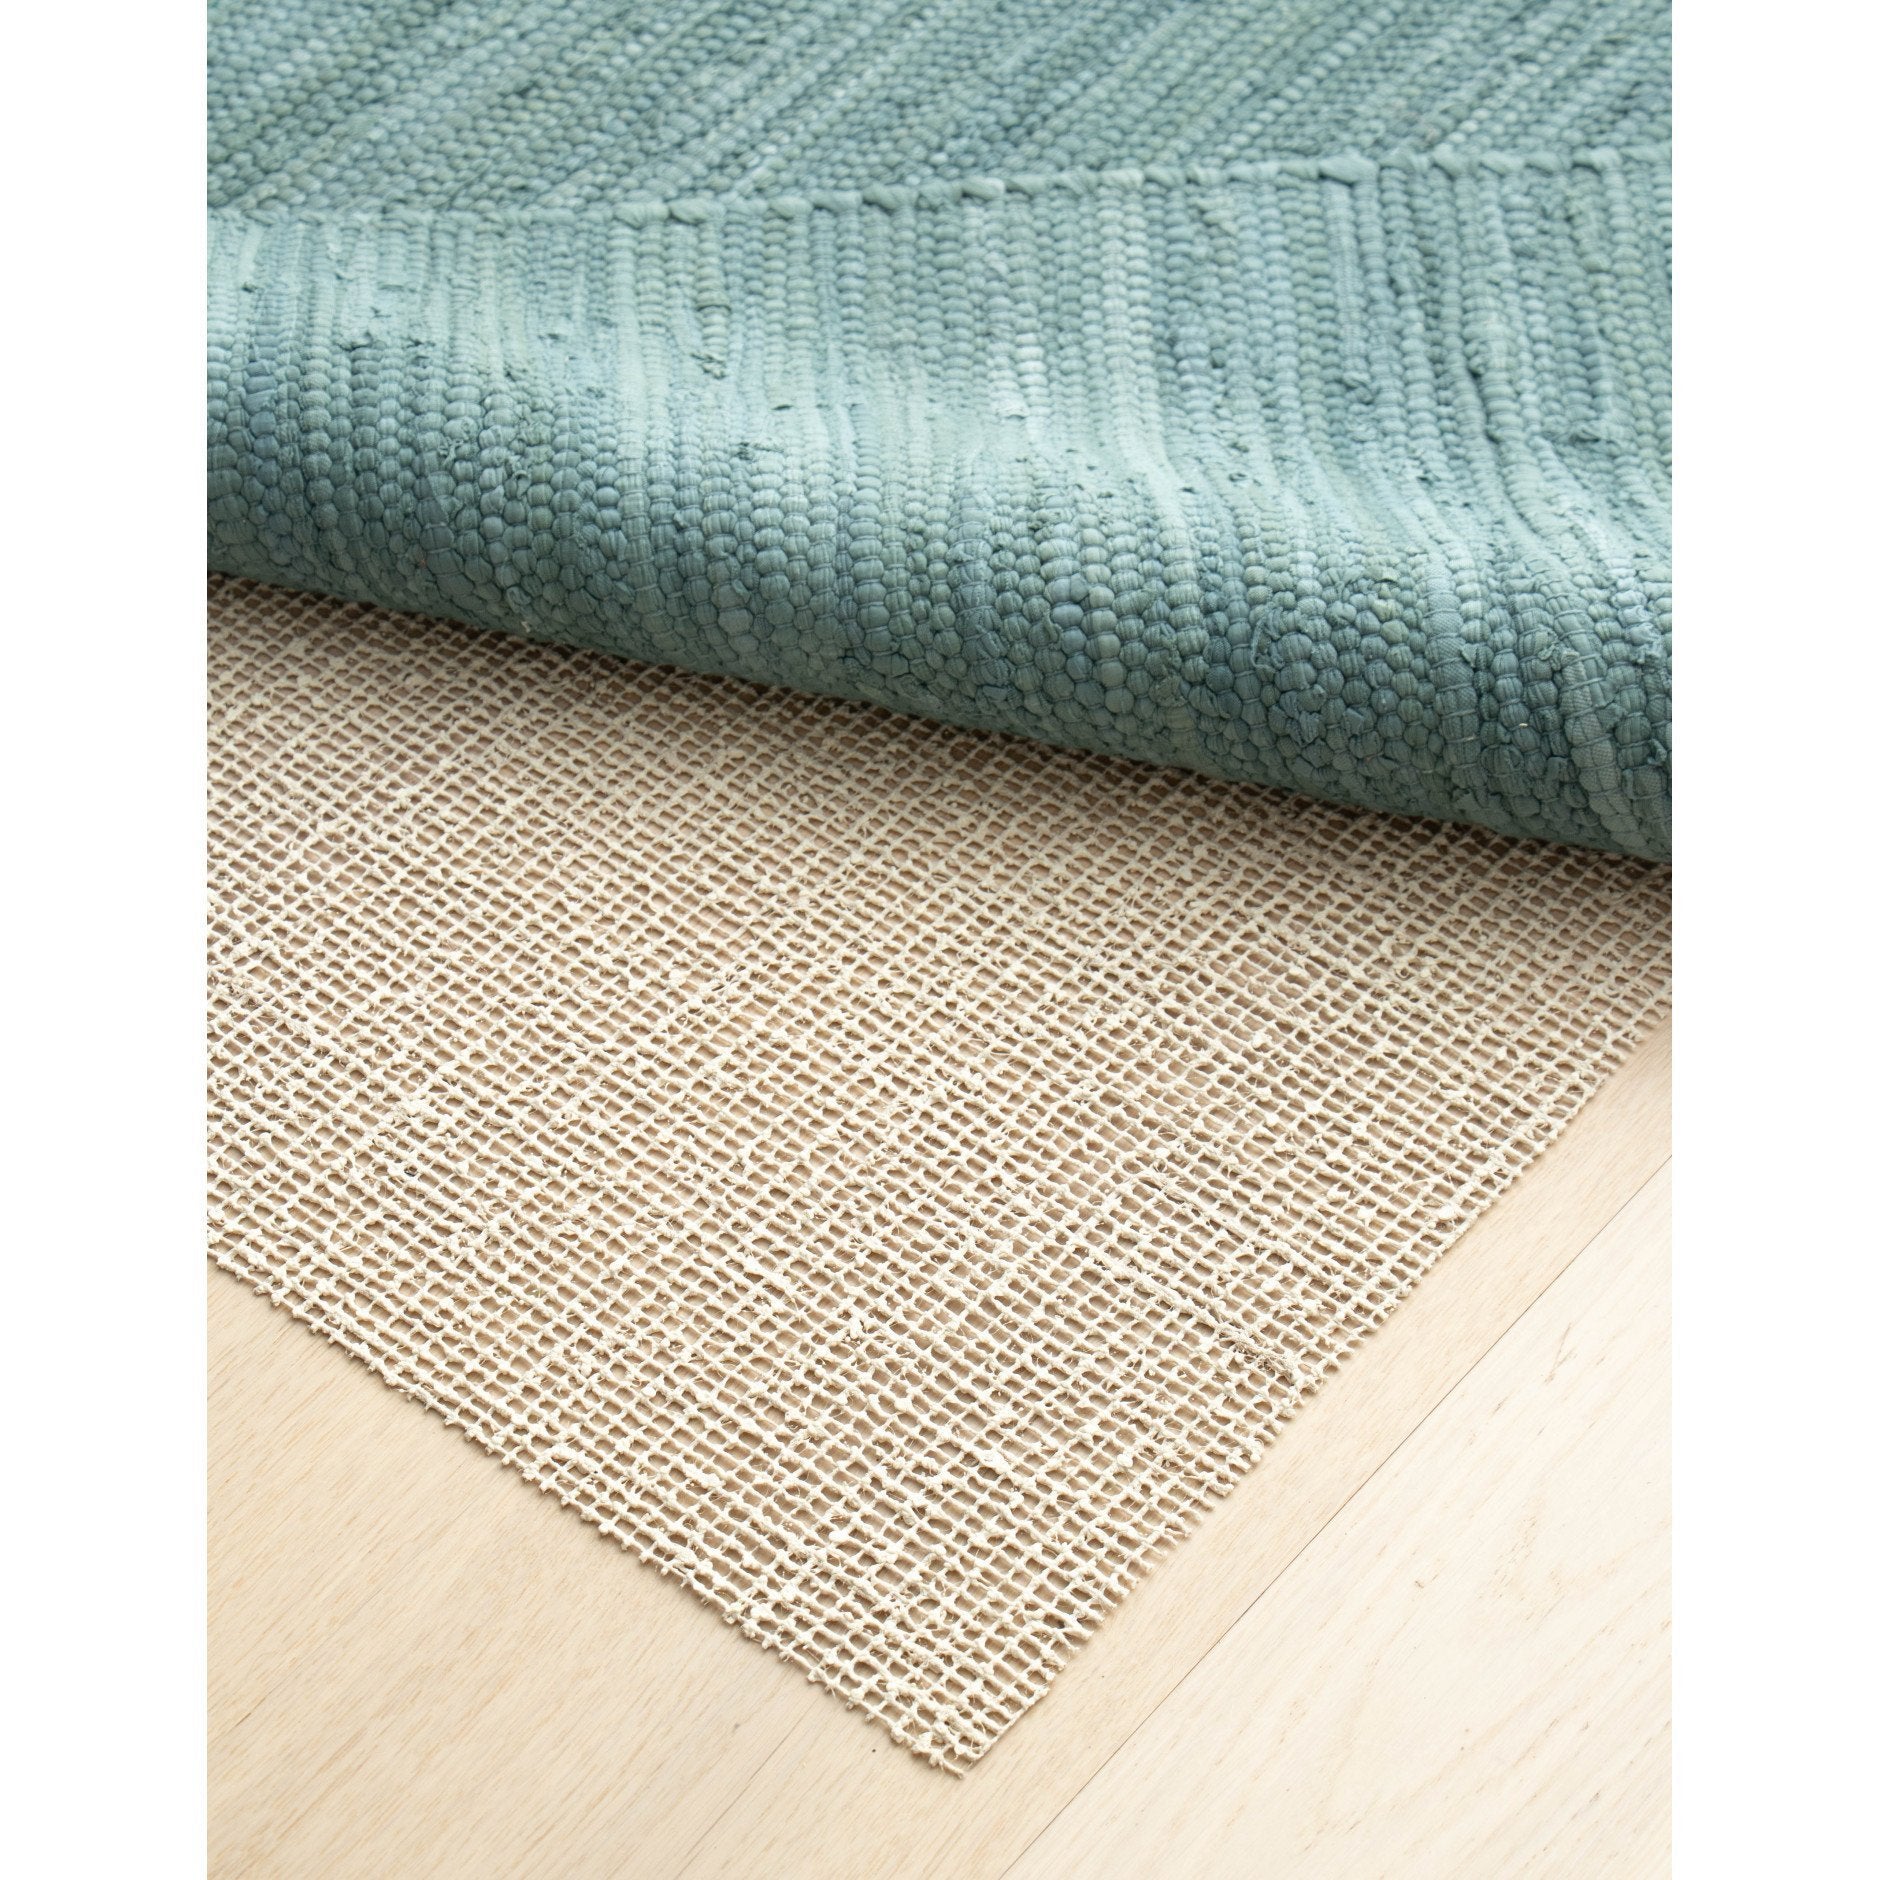 Tappeto in lattice organico e iuta organico del tappeto, 50 x 80 cm